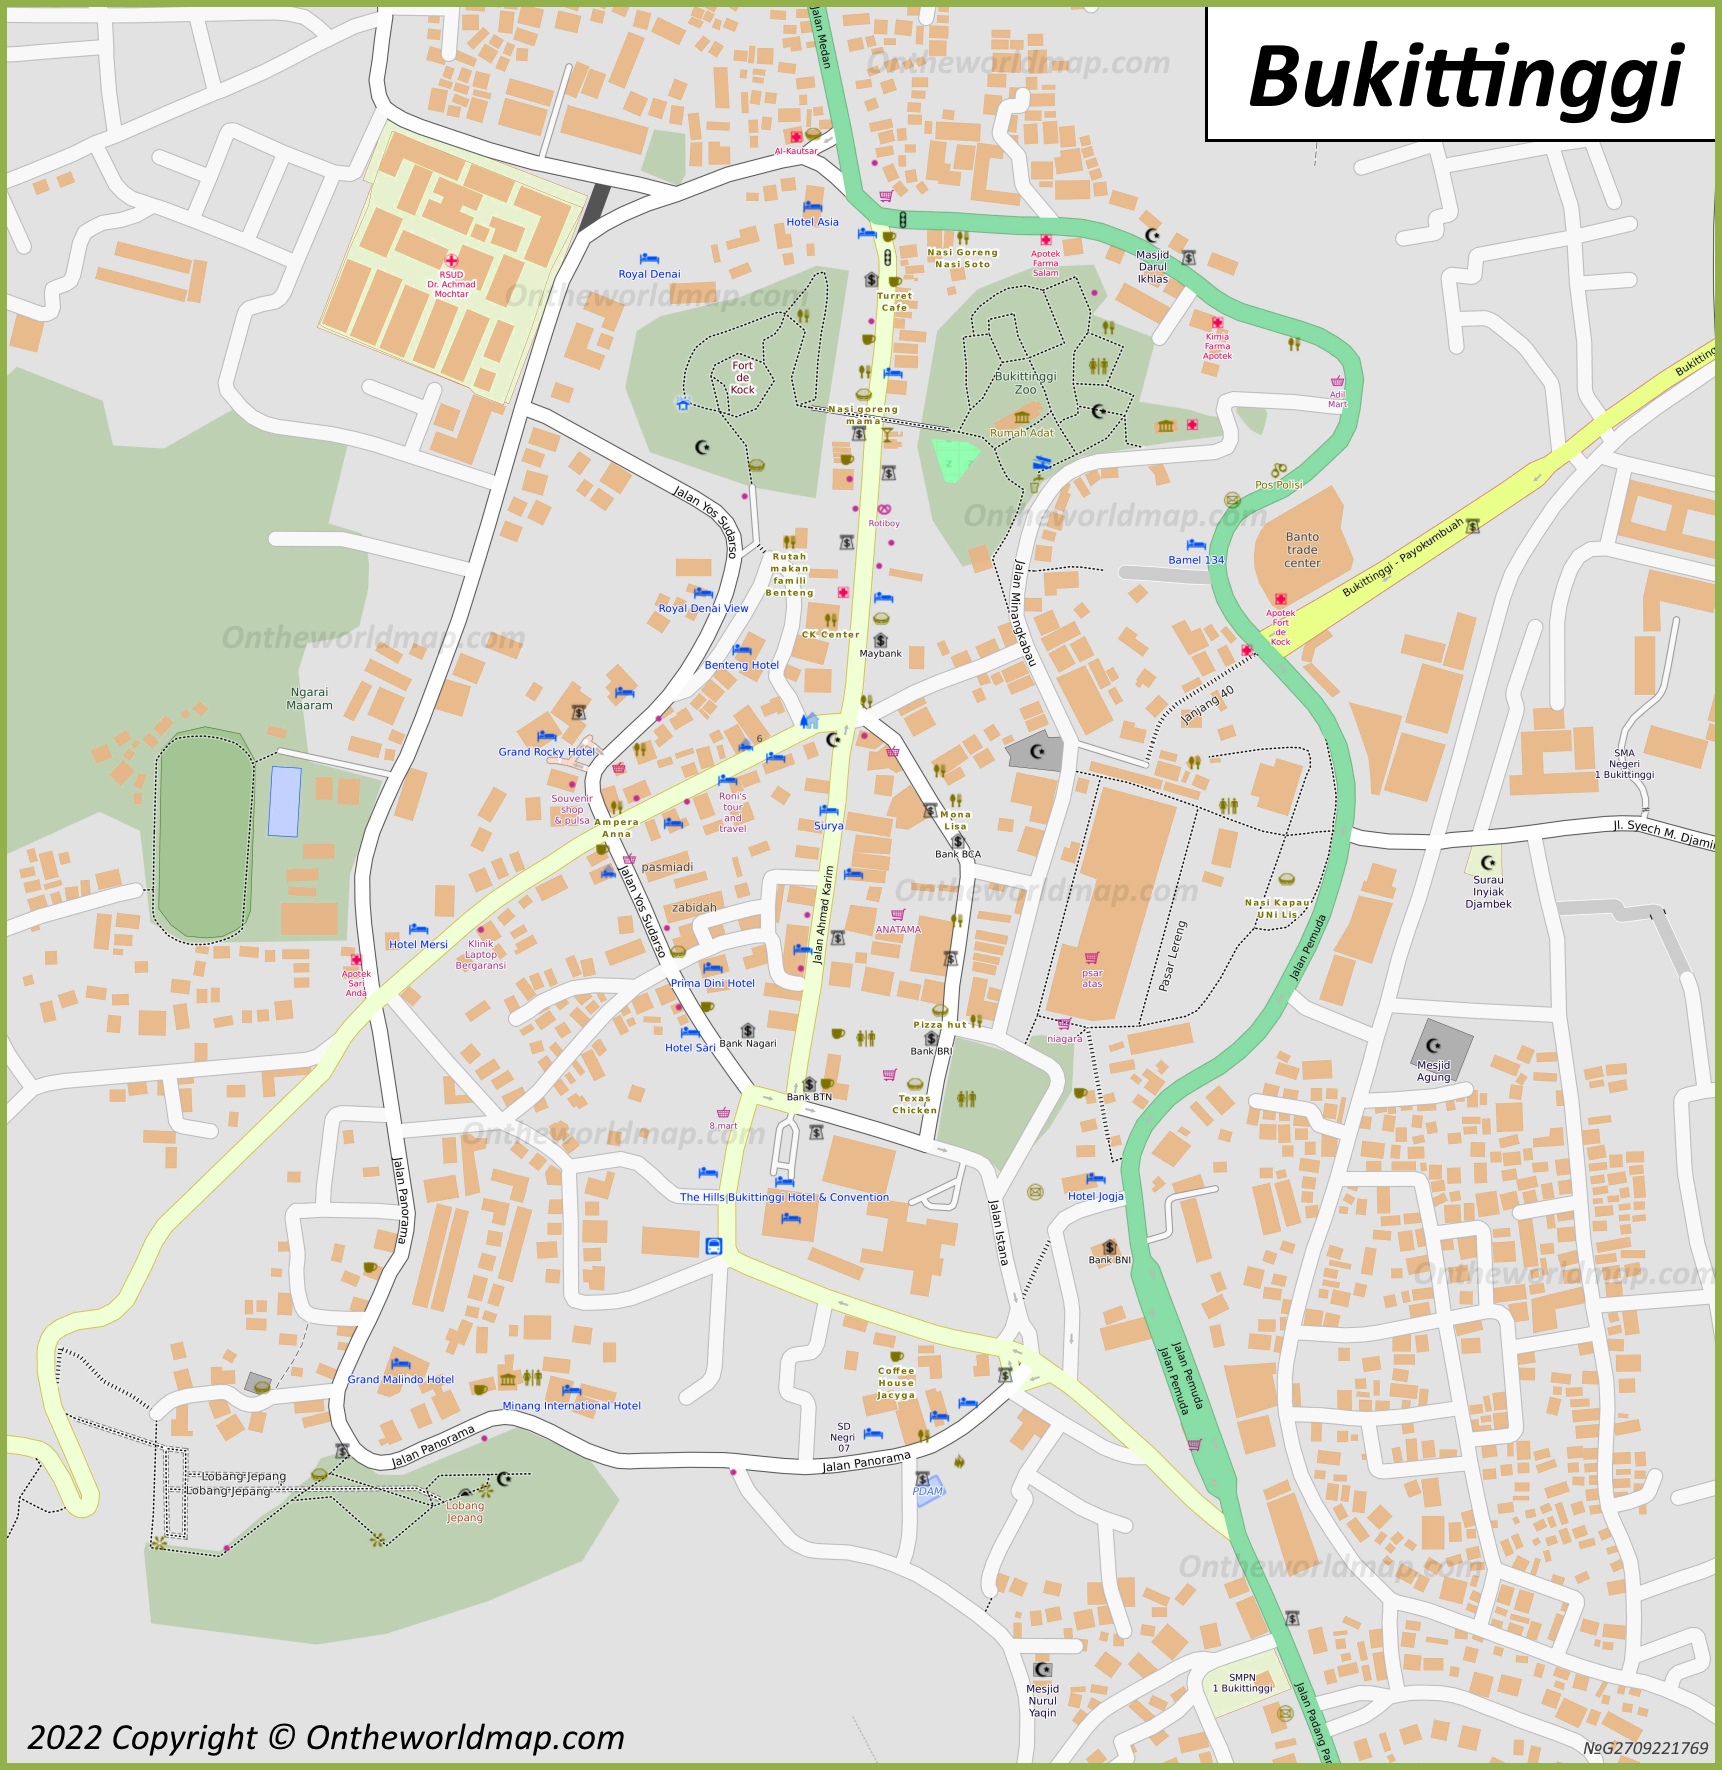 Bukittinggi City Centre Map